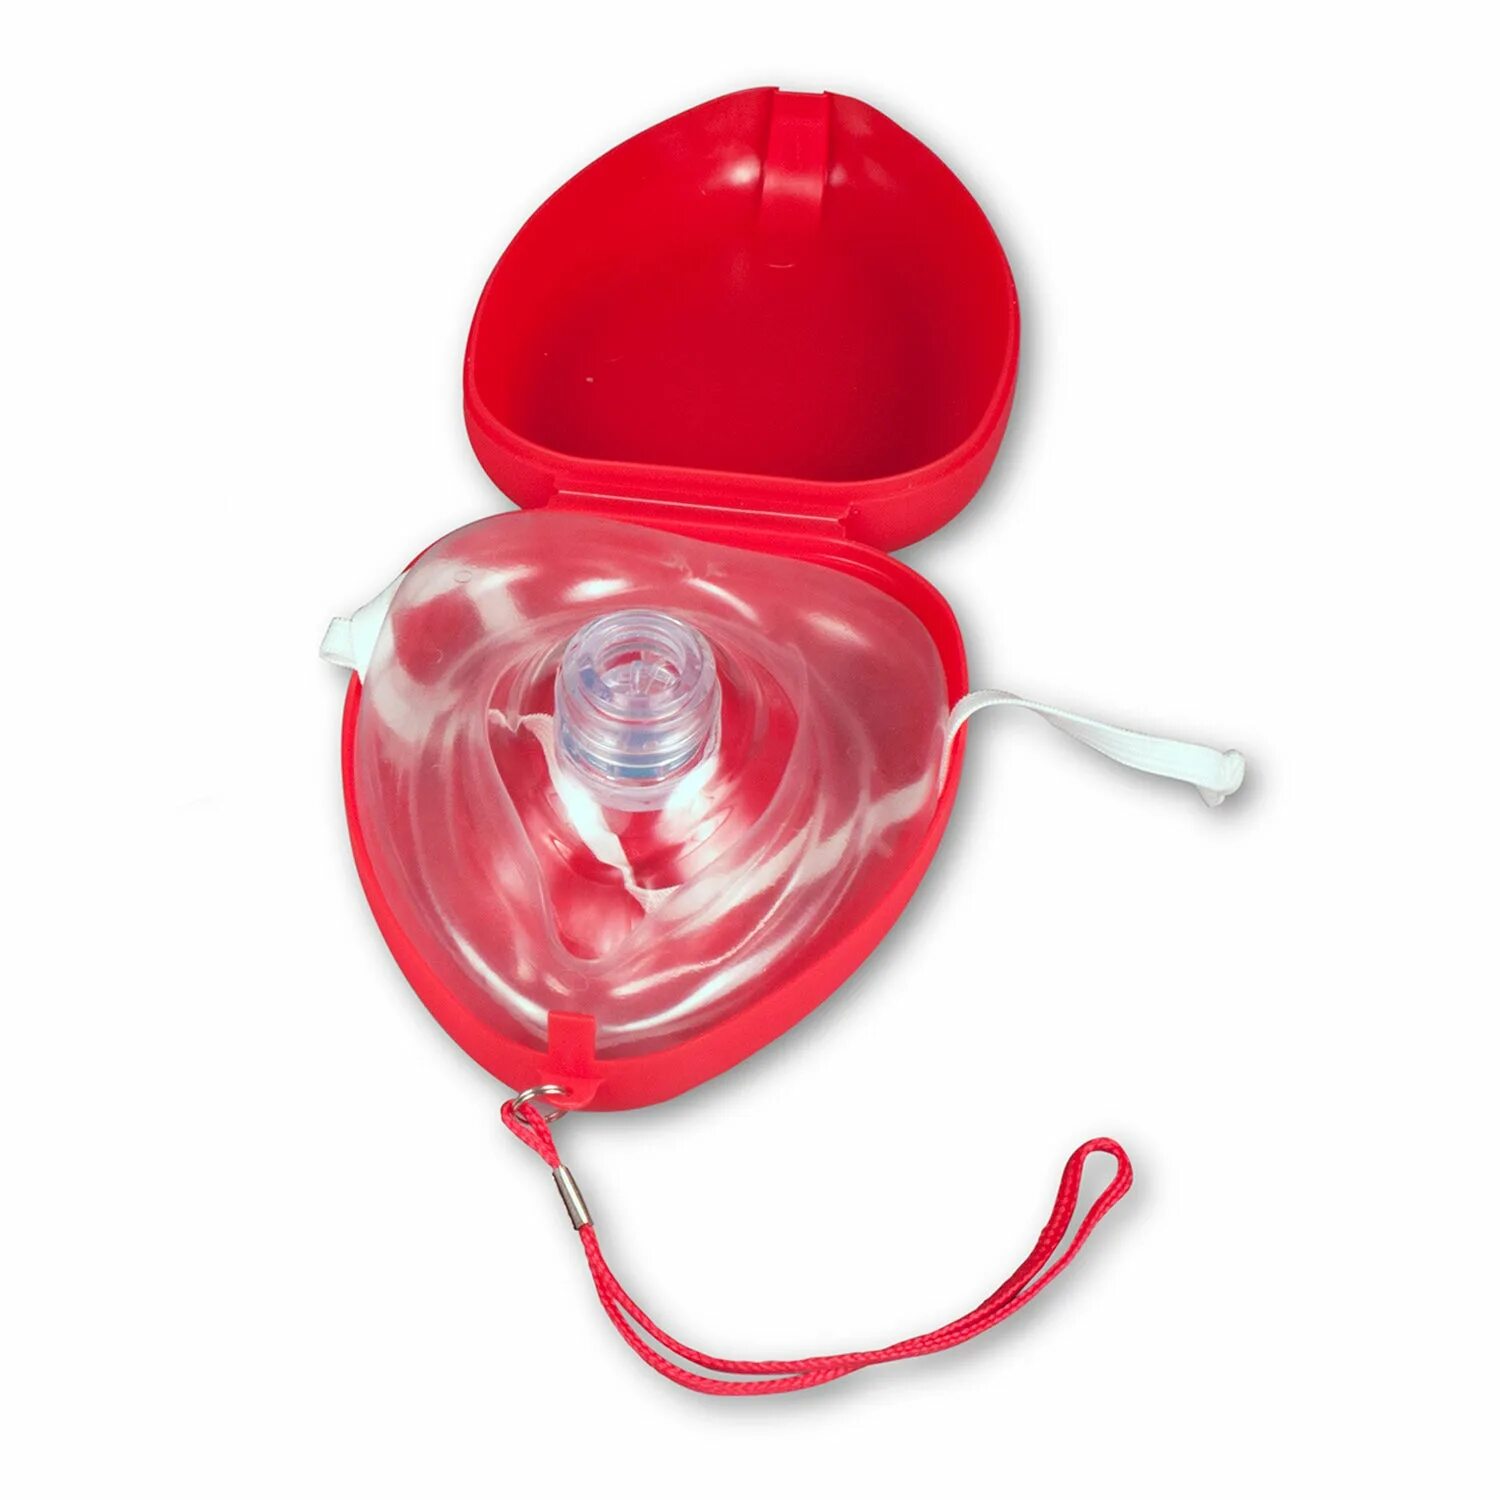 Карманная маска для ИВЛ "рот-маска" Laerdal. Маска для искусственного дыхания ADSAFE CPR Pocket. Маска реанимационная для СЛР. Карманная маска для реанимации с клапаном. Маска для слр